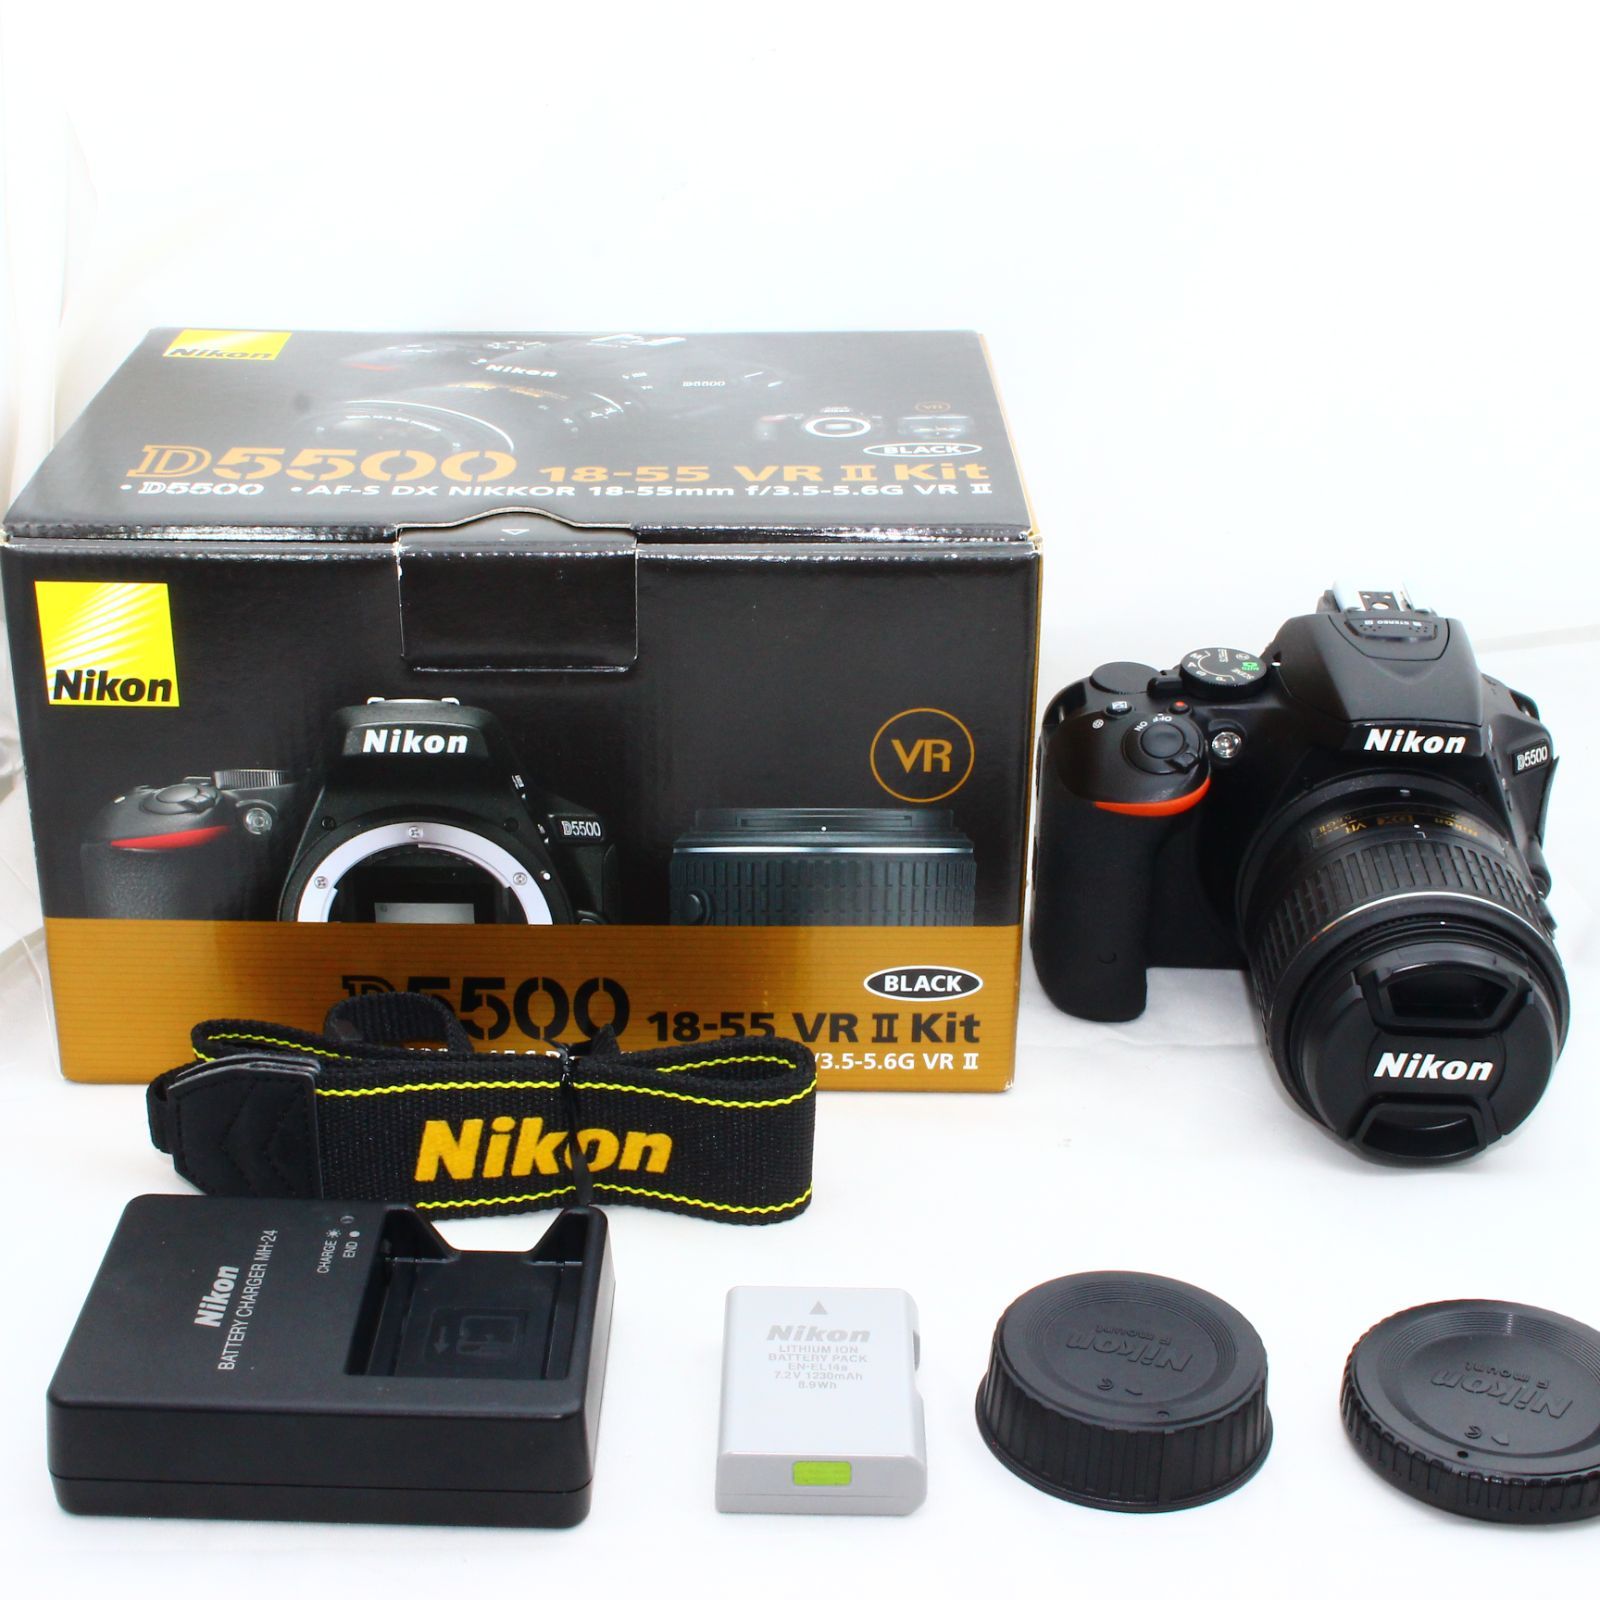 Nikon D5500 18-55 VRⅡ Kit